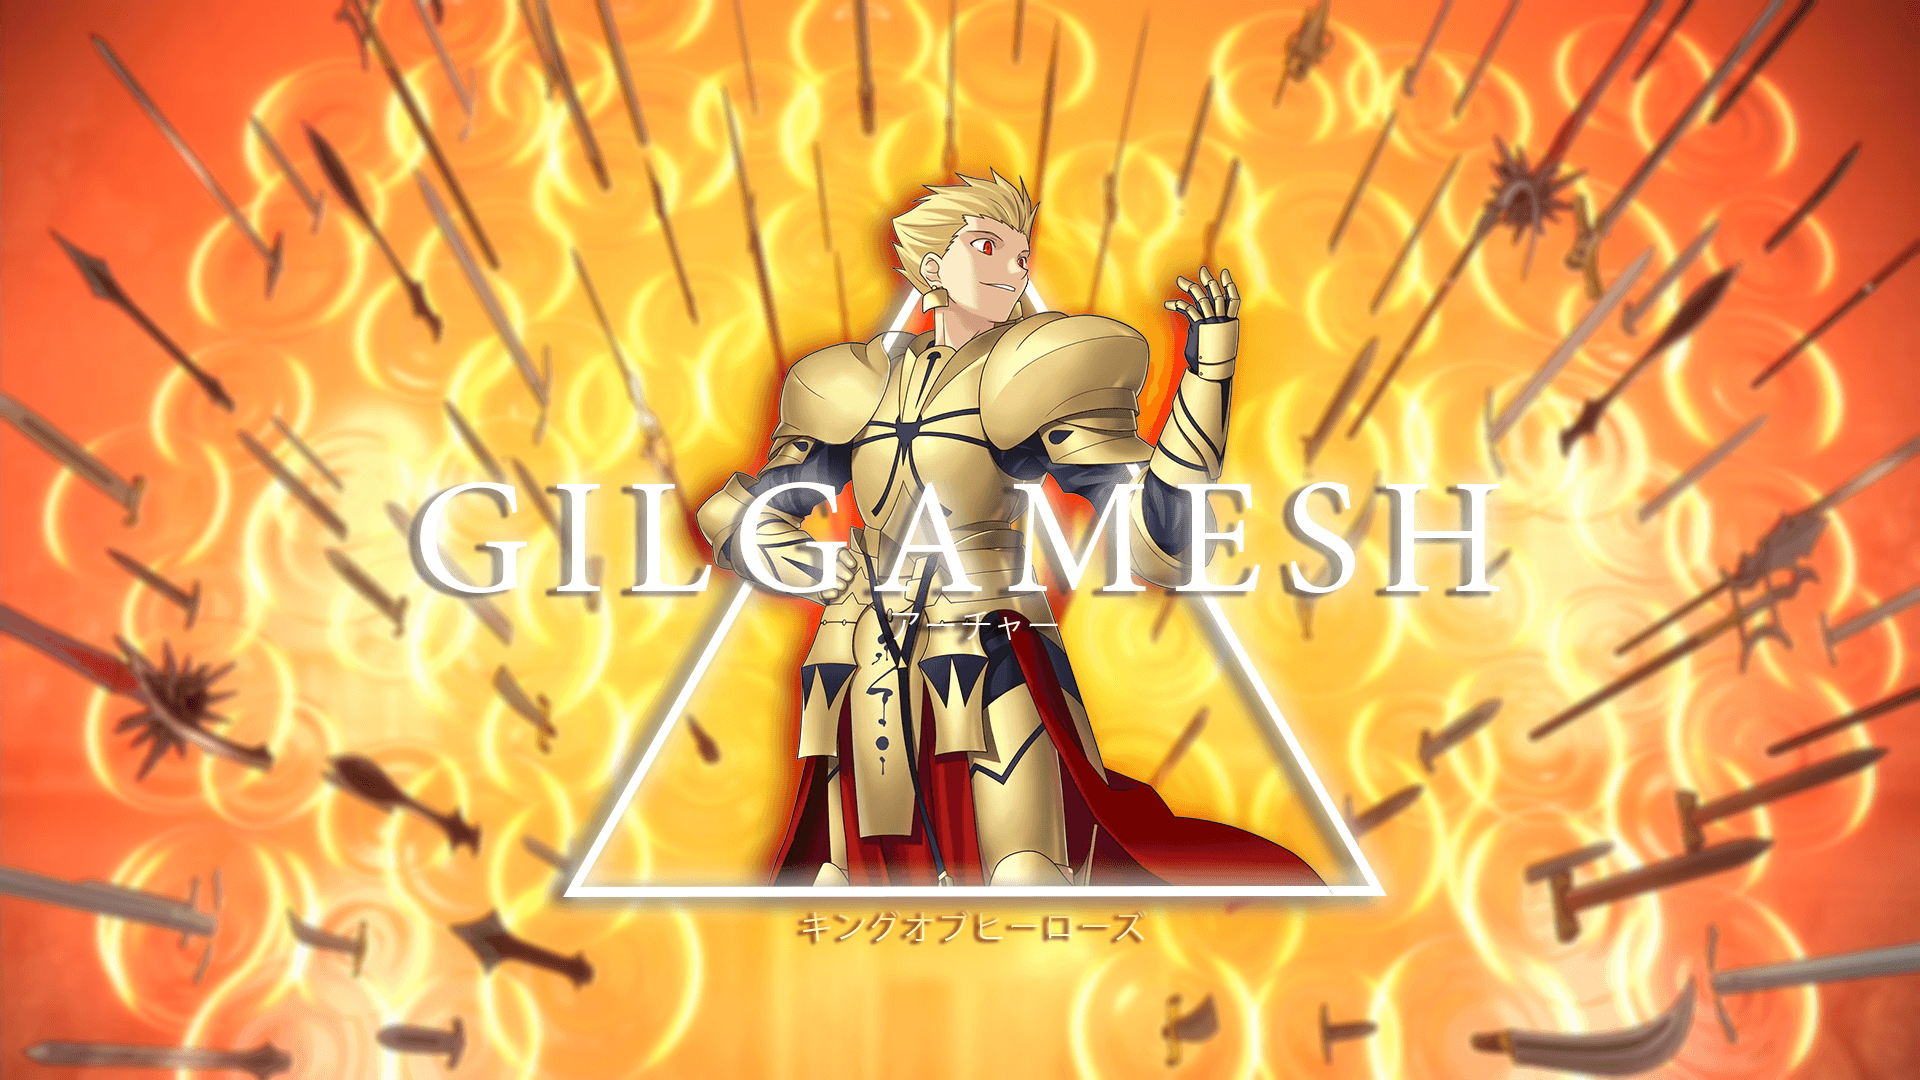 Gilgamesh Wallpapers - 4k, HD Gilgamesh Backgrounds on WallpaperBat